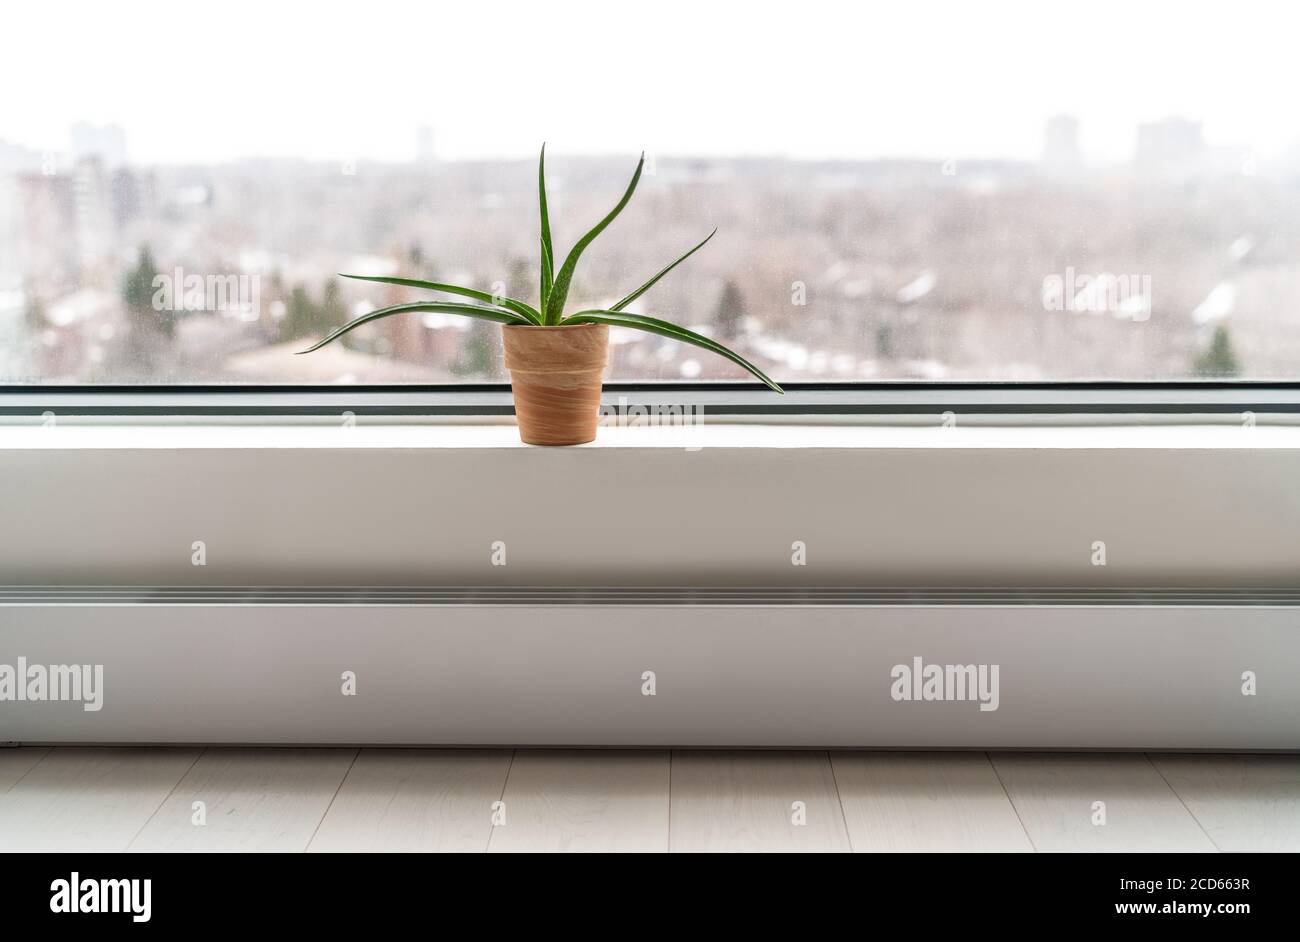 Impianto dalla finestra dell'appartamento in inverno - impianto di  depurazione aria Aloe vera per pulire l'aria da sostanze chimiche tossiche  - naturale purificatore all'interno di edifici condominio Foto stock - Alamy